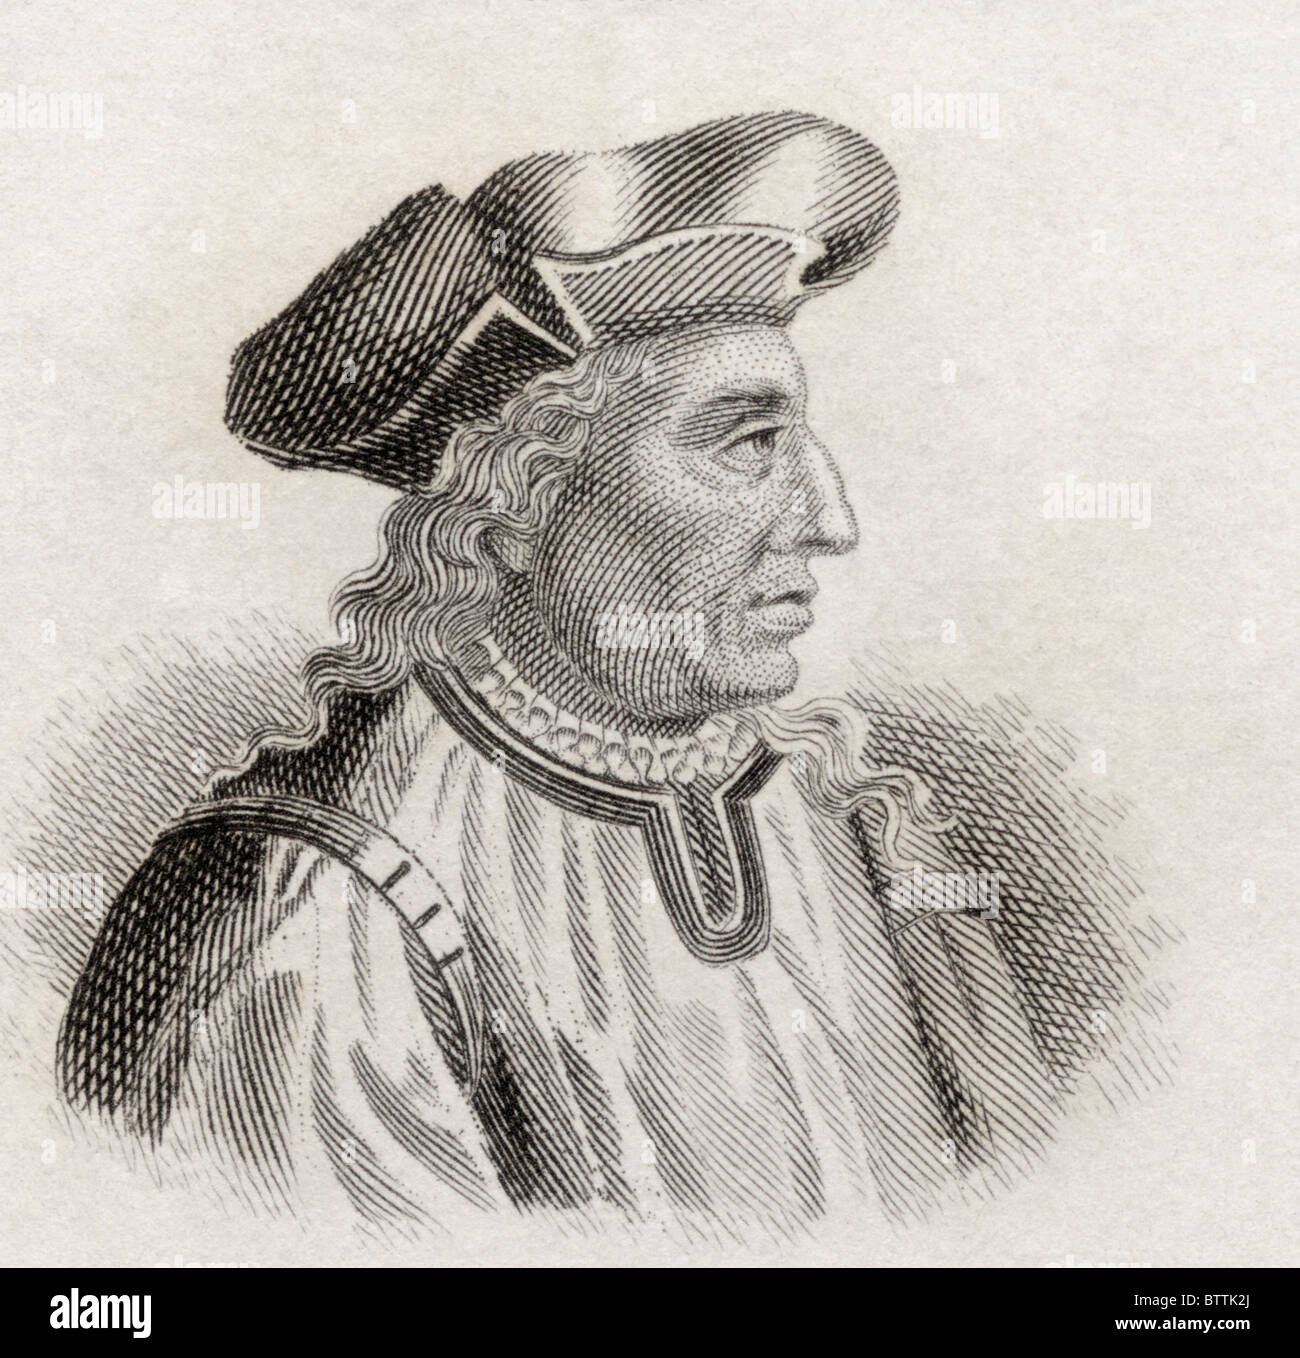 Niccolò di Bernardo dei Machiavelli, 1469 à 1527. Philosophe et écrivain italien. Banque D'Images